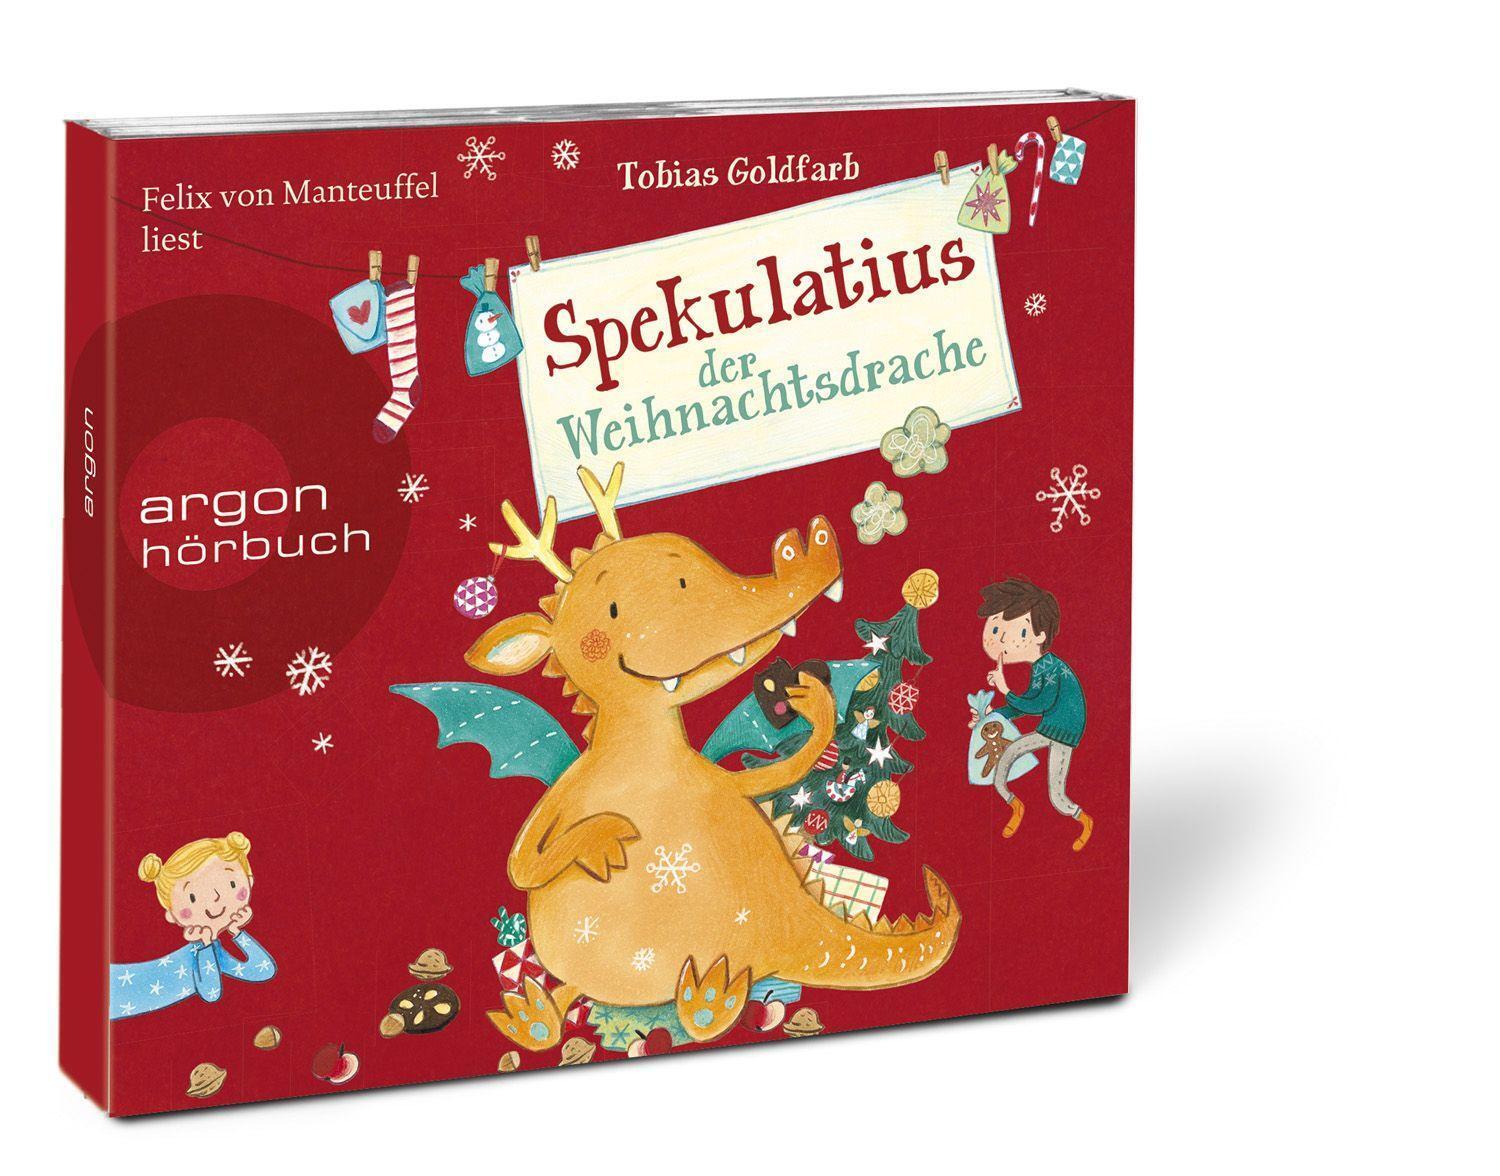 Bild: 9783839842348 | Spekulatius der Weihnachtsdrache | Tobias Goldfarb | Audio-CD | 2020